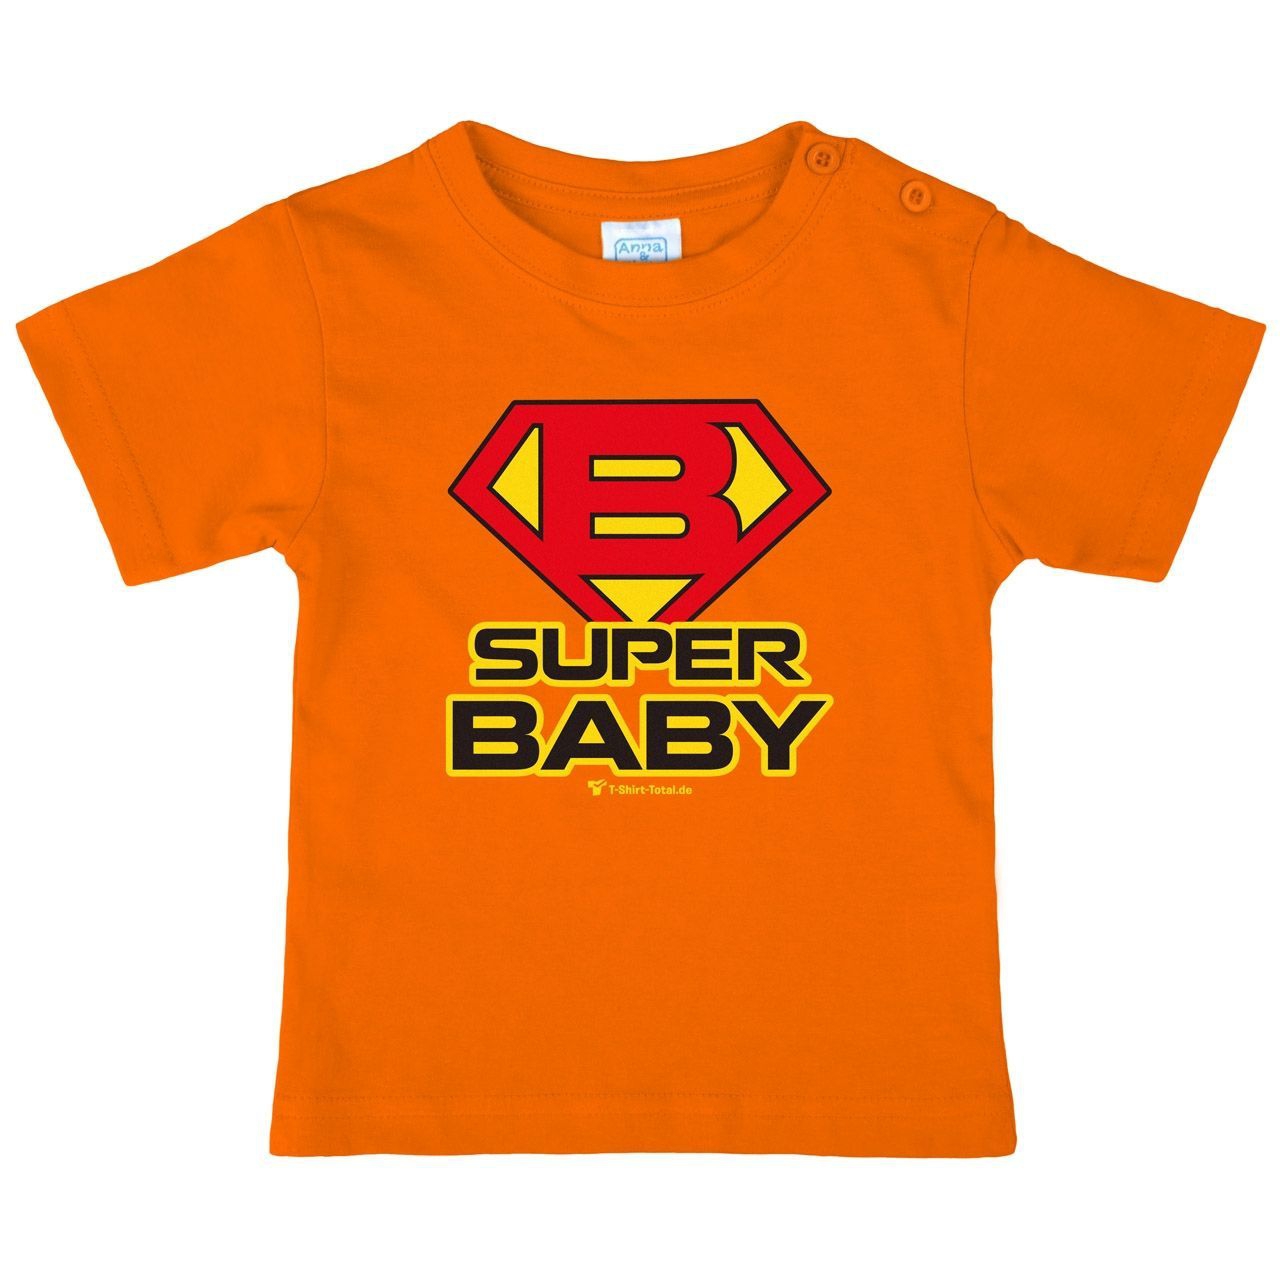 Super Baby Kinder T-Shirt orange 92